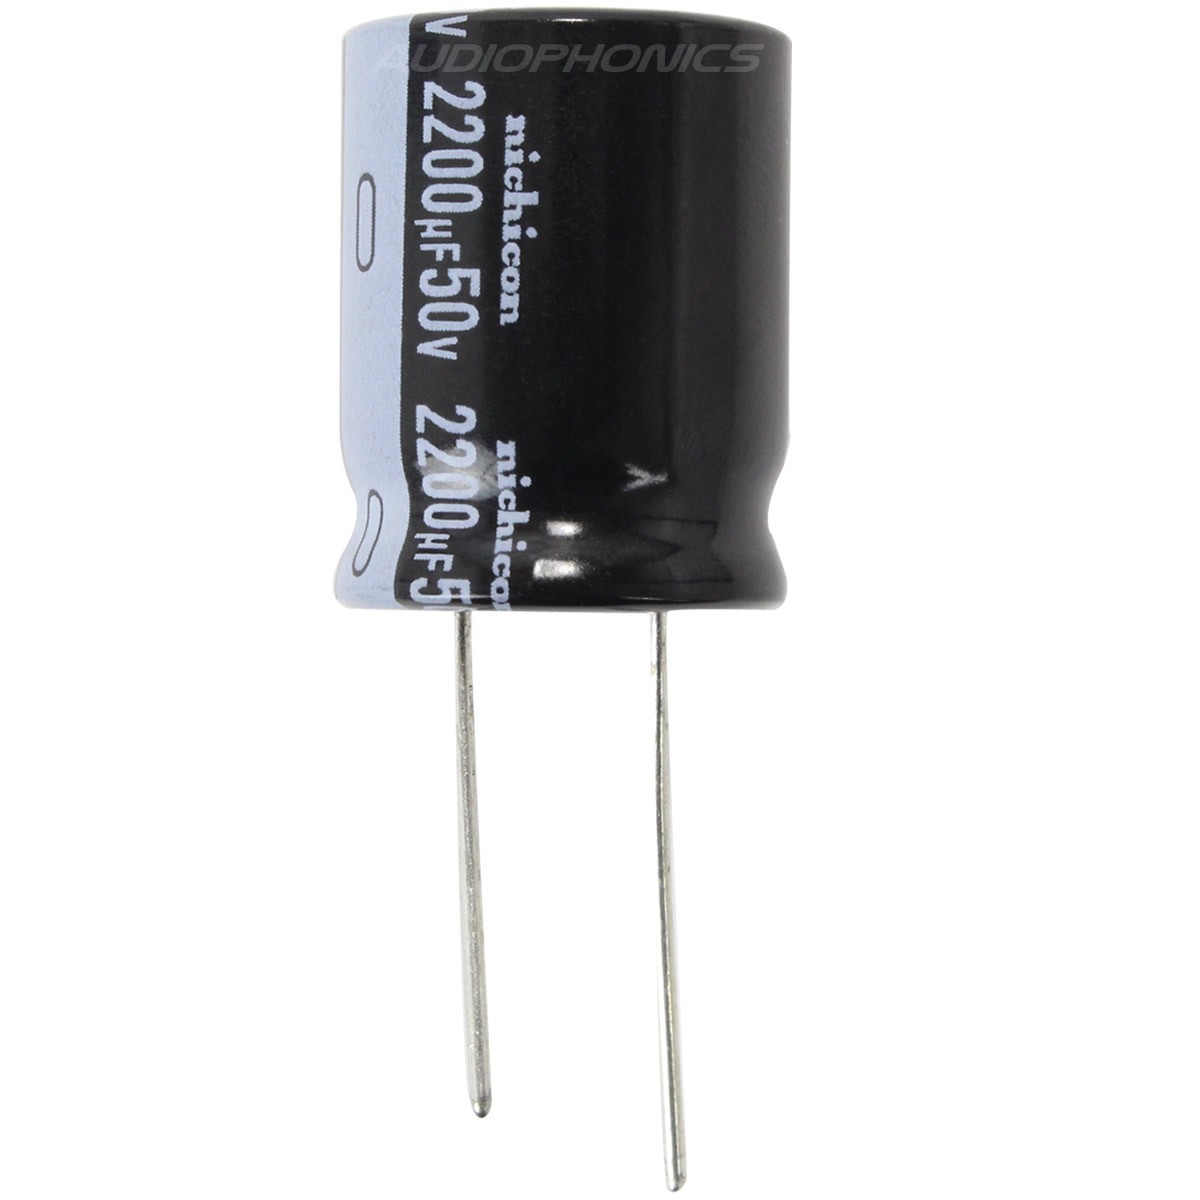 NICHICON URS Condensateur Électrolytique Audio 50V 2200µF